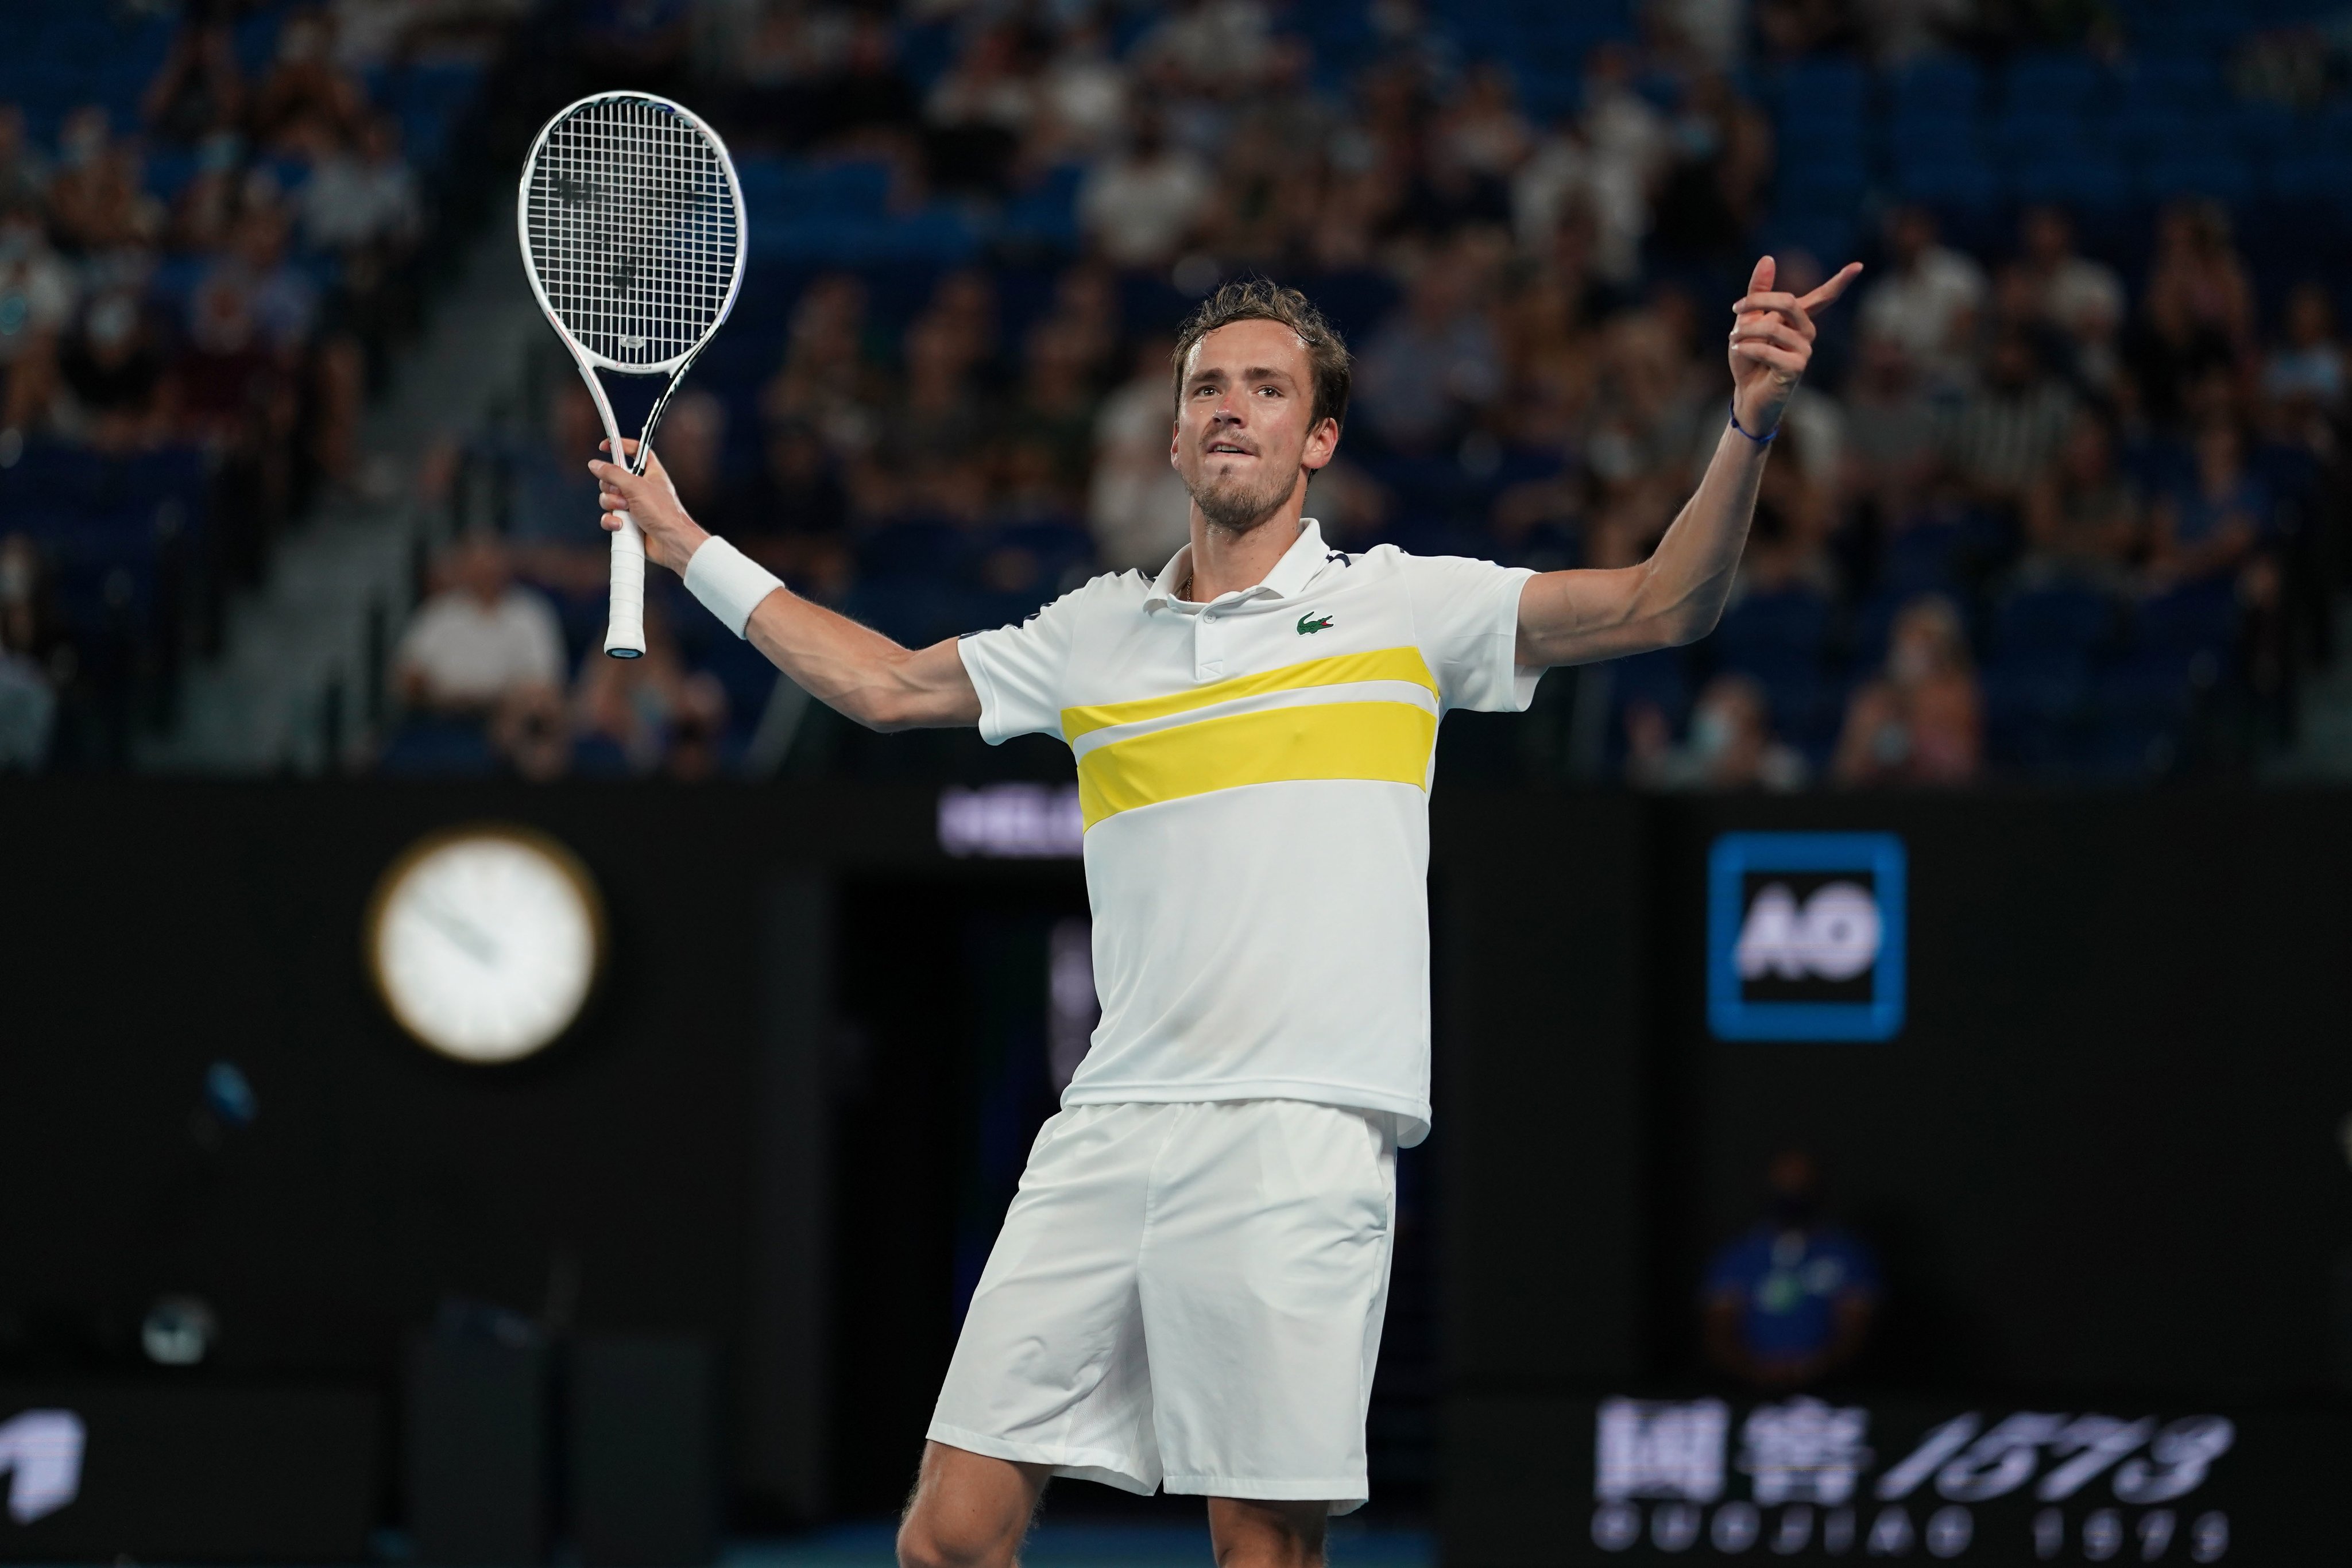 At Australian Open, Djokovic chases 18th Slam, Medvedev 1st